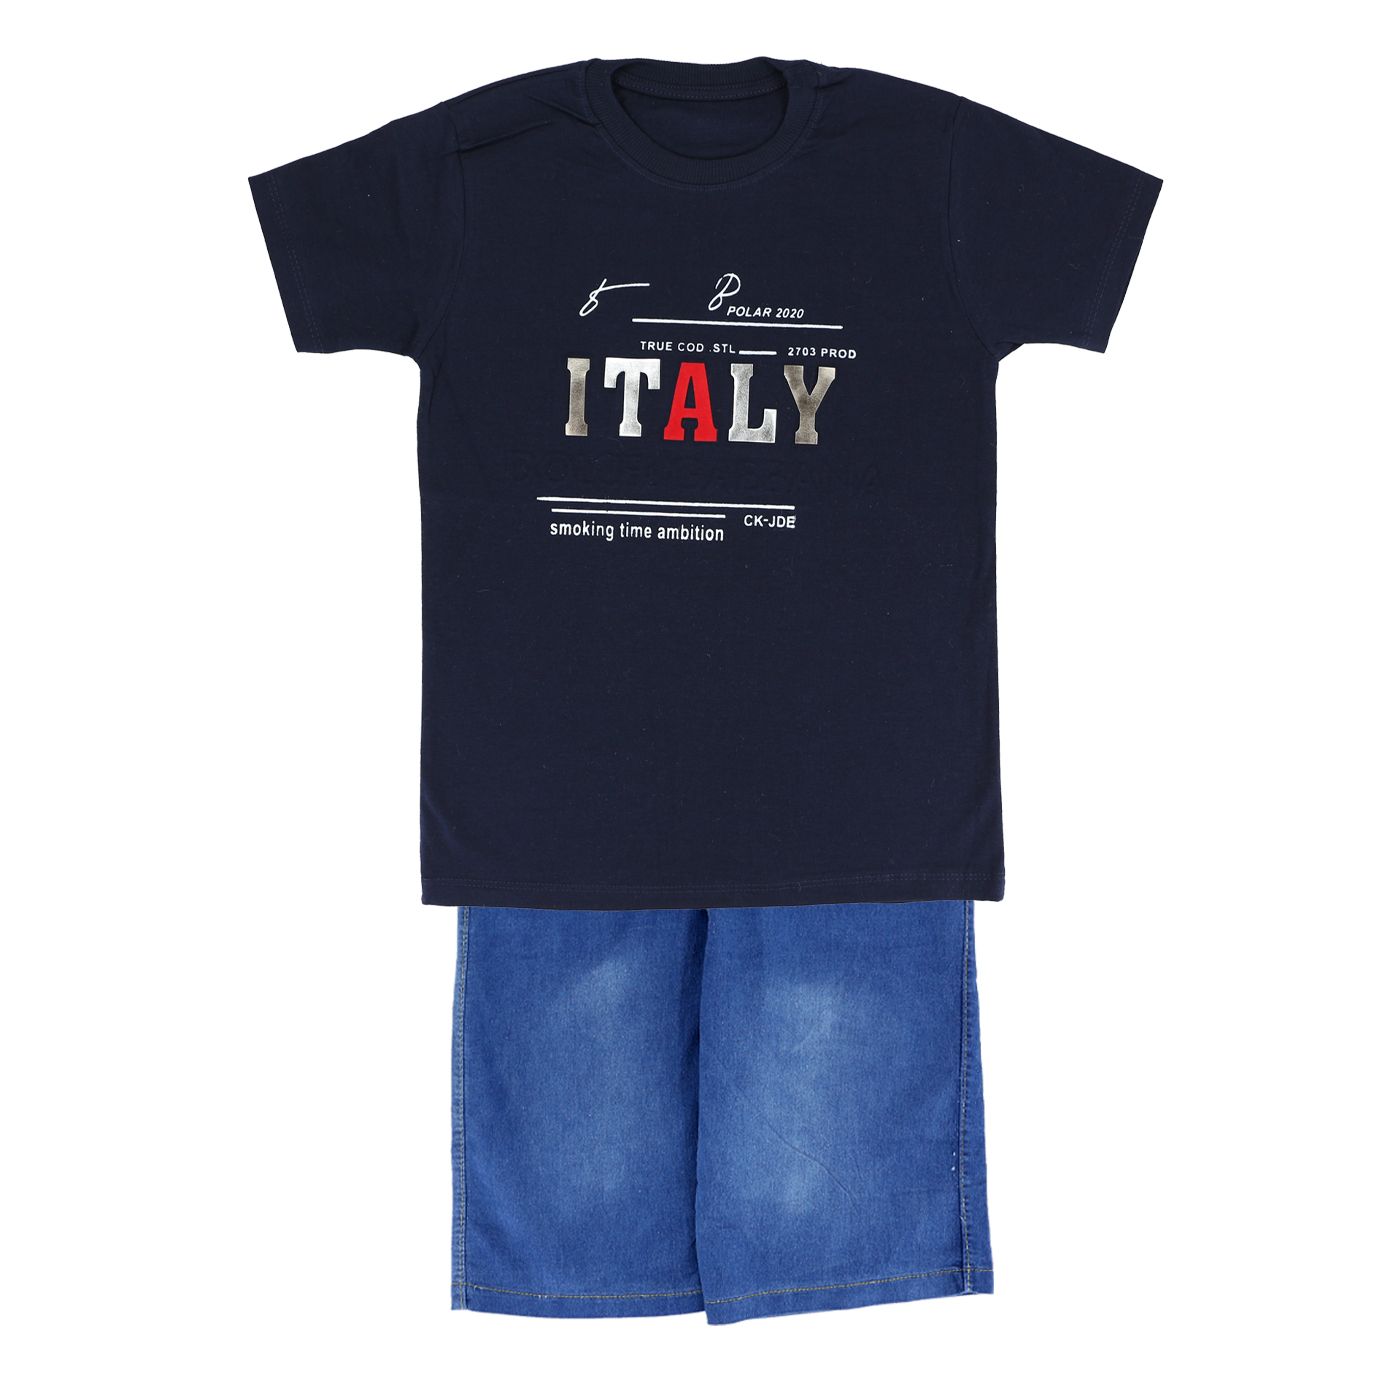  ست تی شرت و شلوارک پسرانه طرح italy کد 01-125 -  - 1